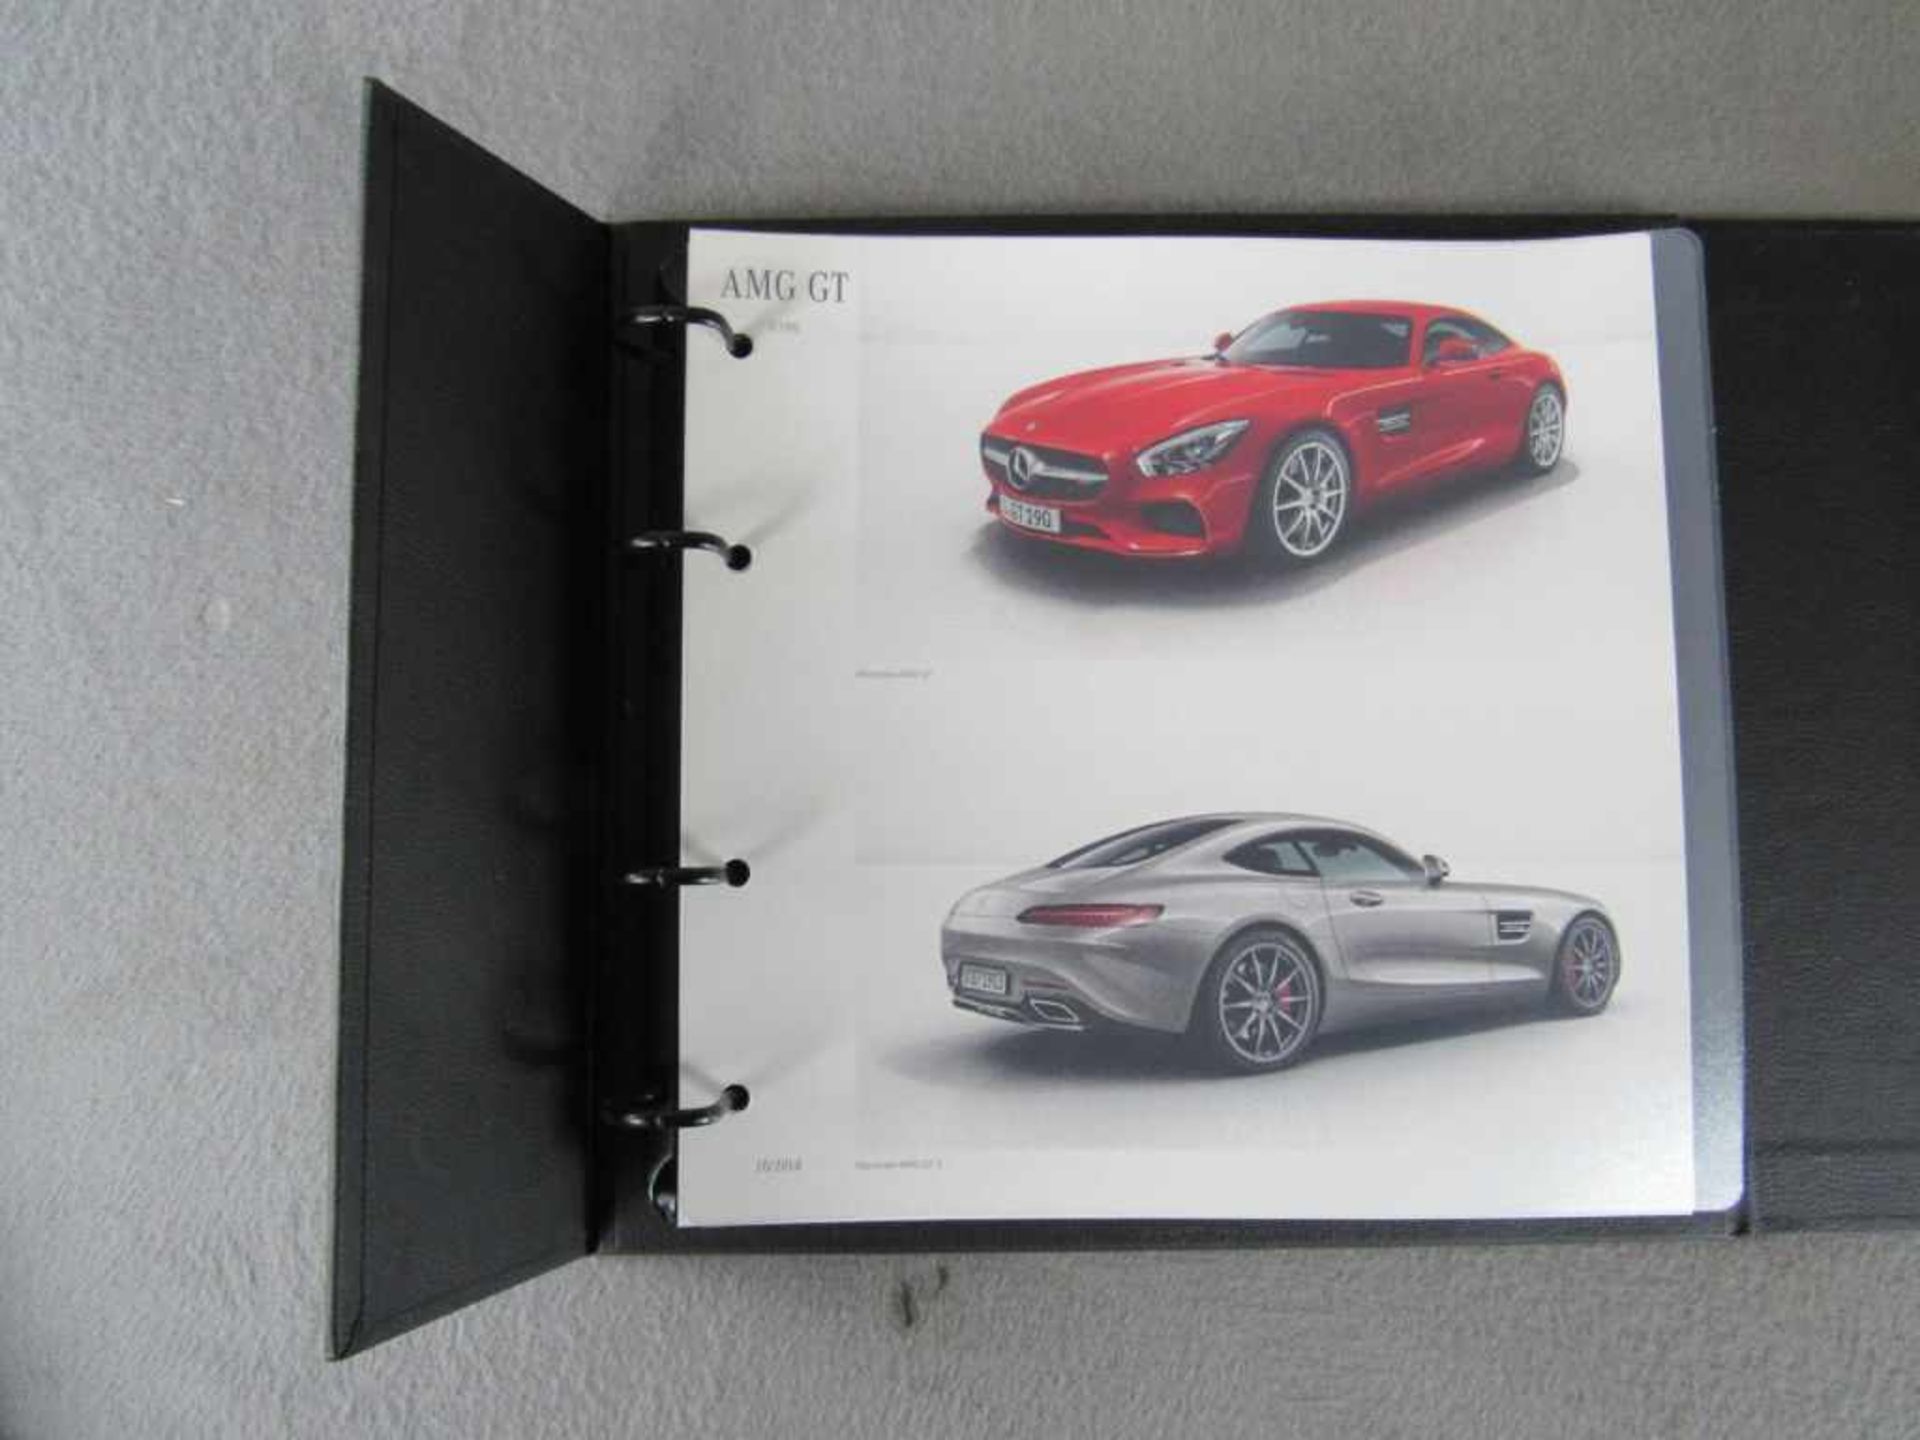 Seltener AMG GT Verkaufsordner, Sehr guter Zustand mit alle Fahrzeug Farbkarten sowie Leder und - Image 2 of 6